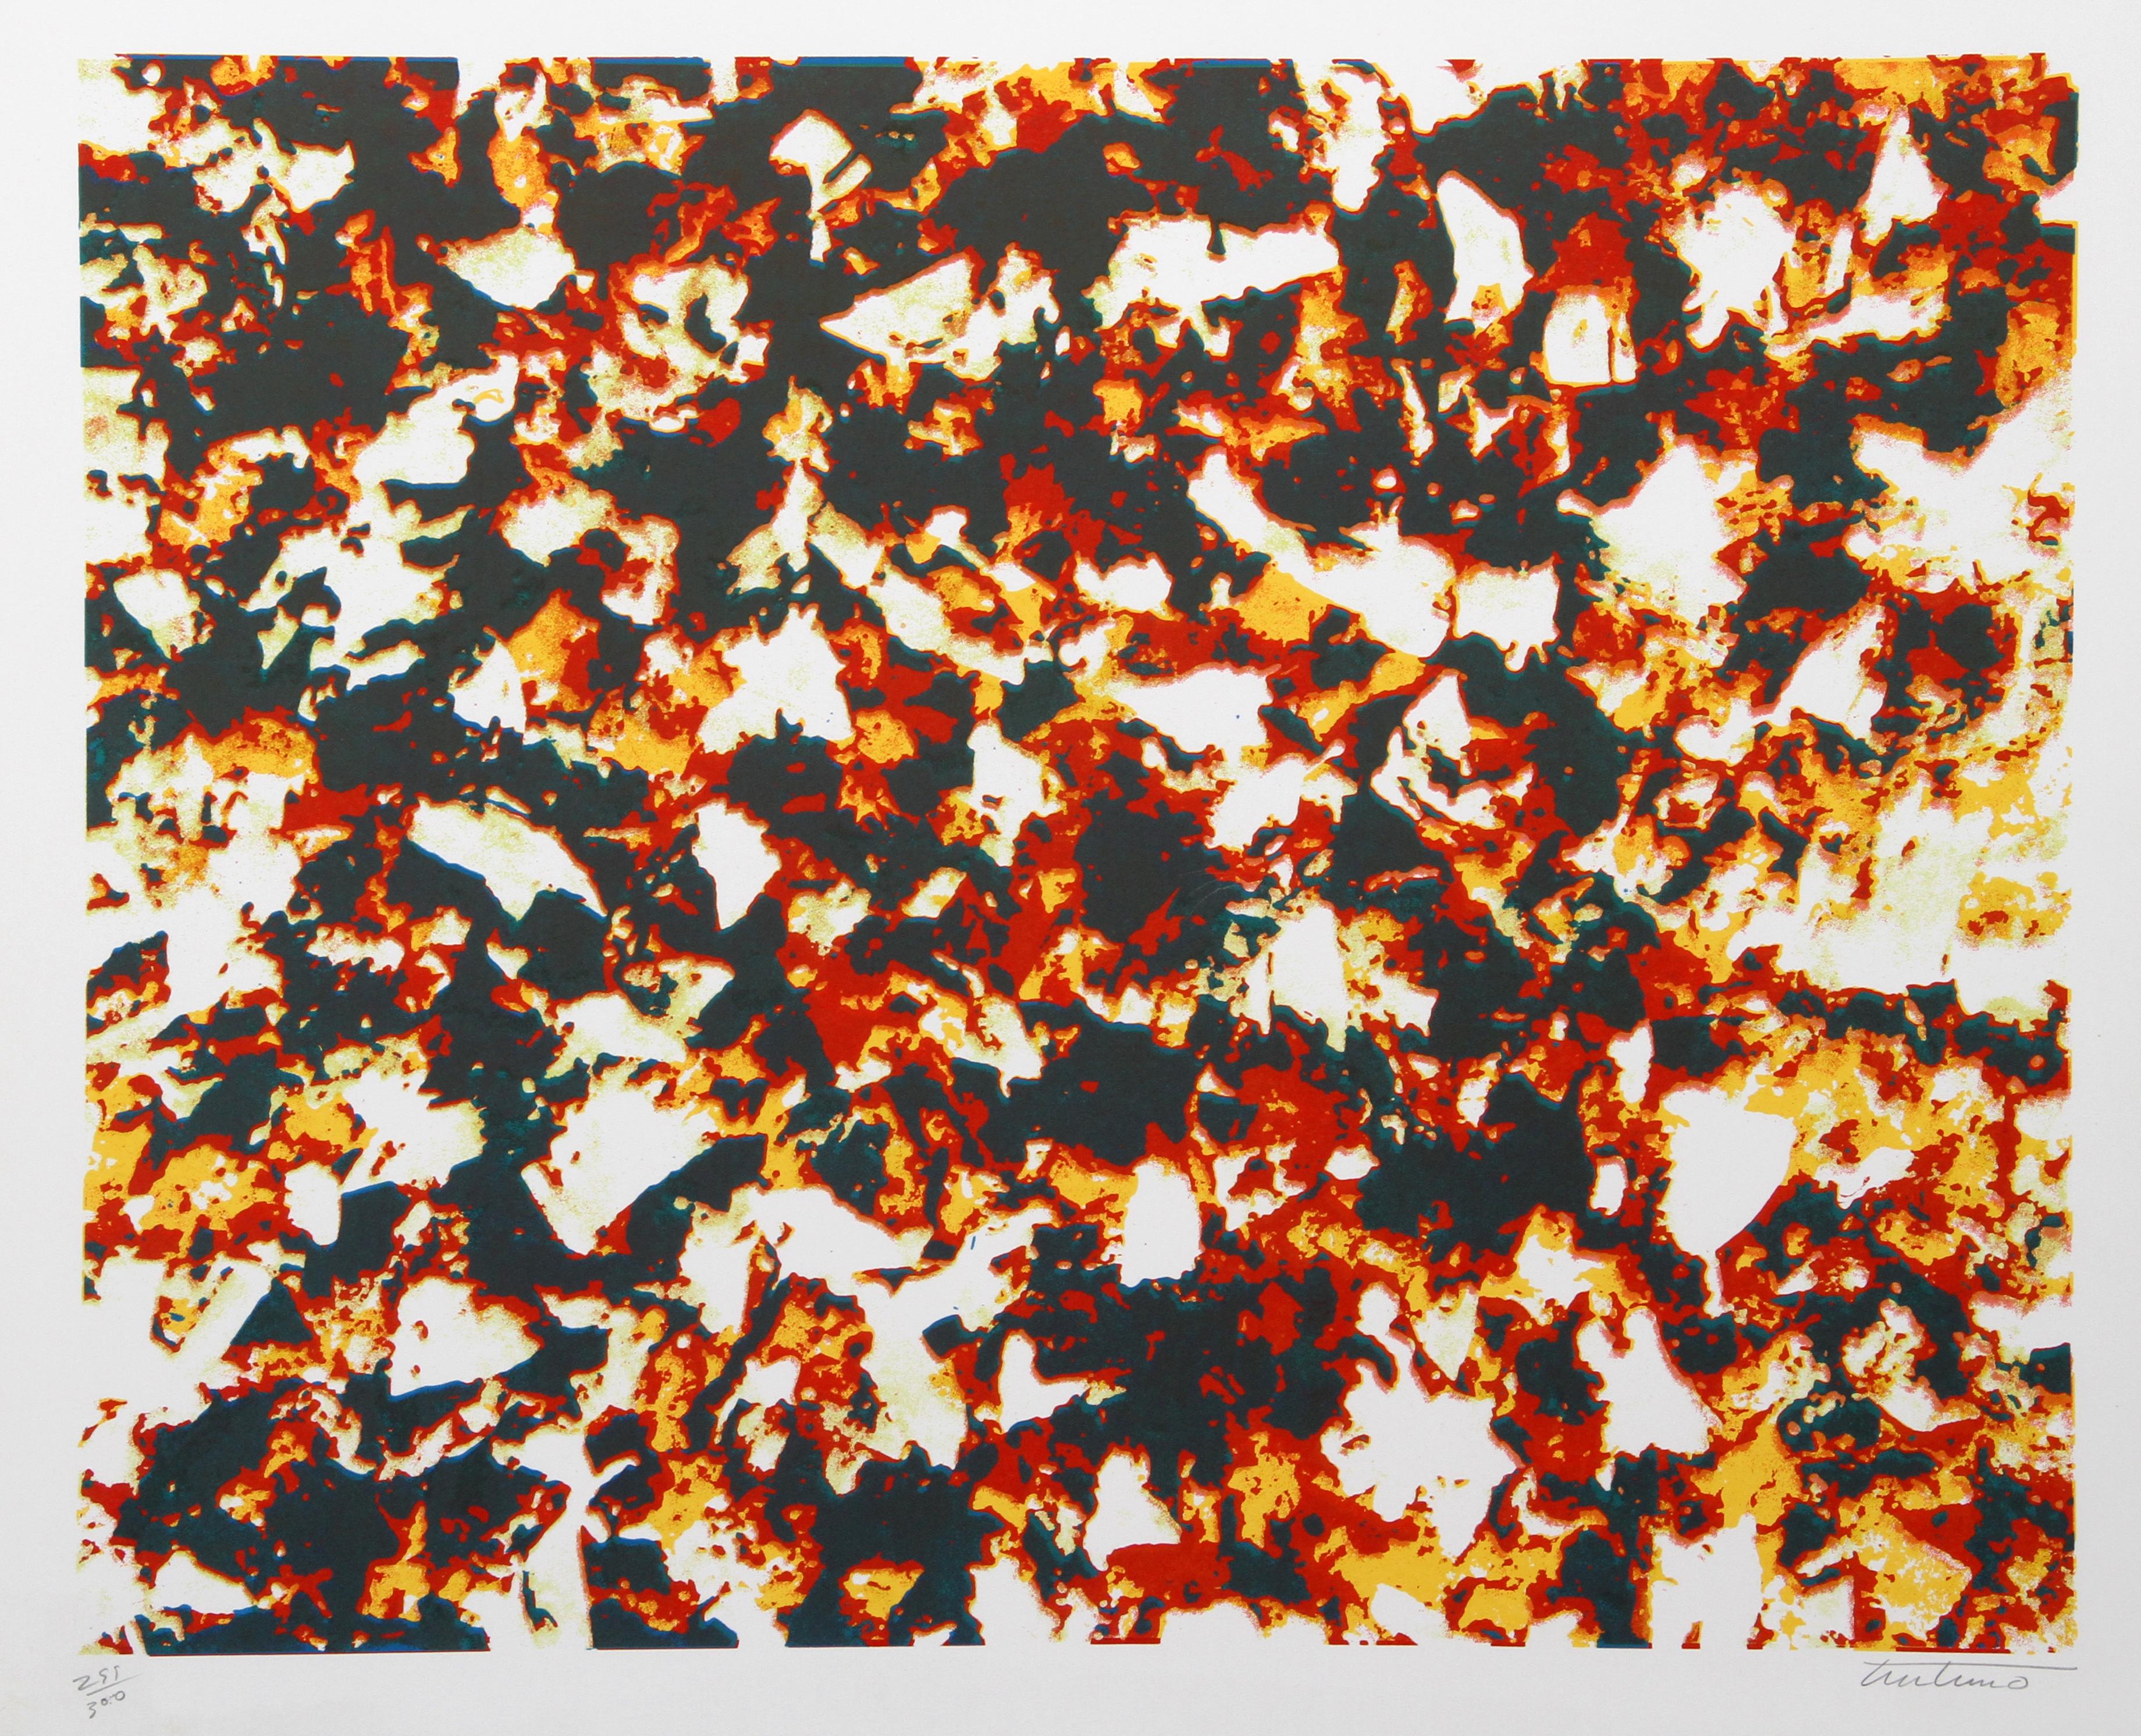 Artiste : Domenick Turturro, Italien/Américain (1936 - 2002)
Titre : Le rêve
Année : 1980
Médium : Sérigraphie, signée et numérotée au crayon
Edition : 300
Taille de l'image : 23 x 29 pouces
Taille : 26 in. x 32.5 in. (66,04 cm x 82,55 cm)